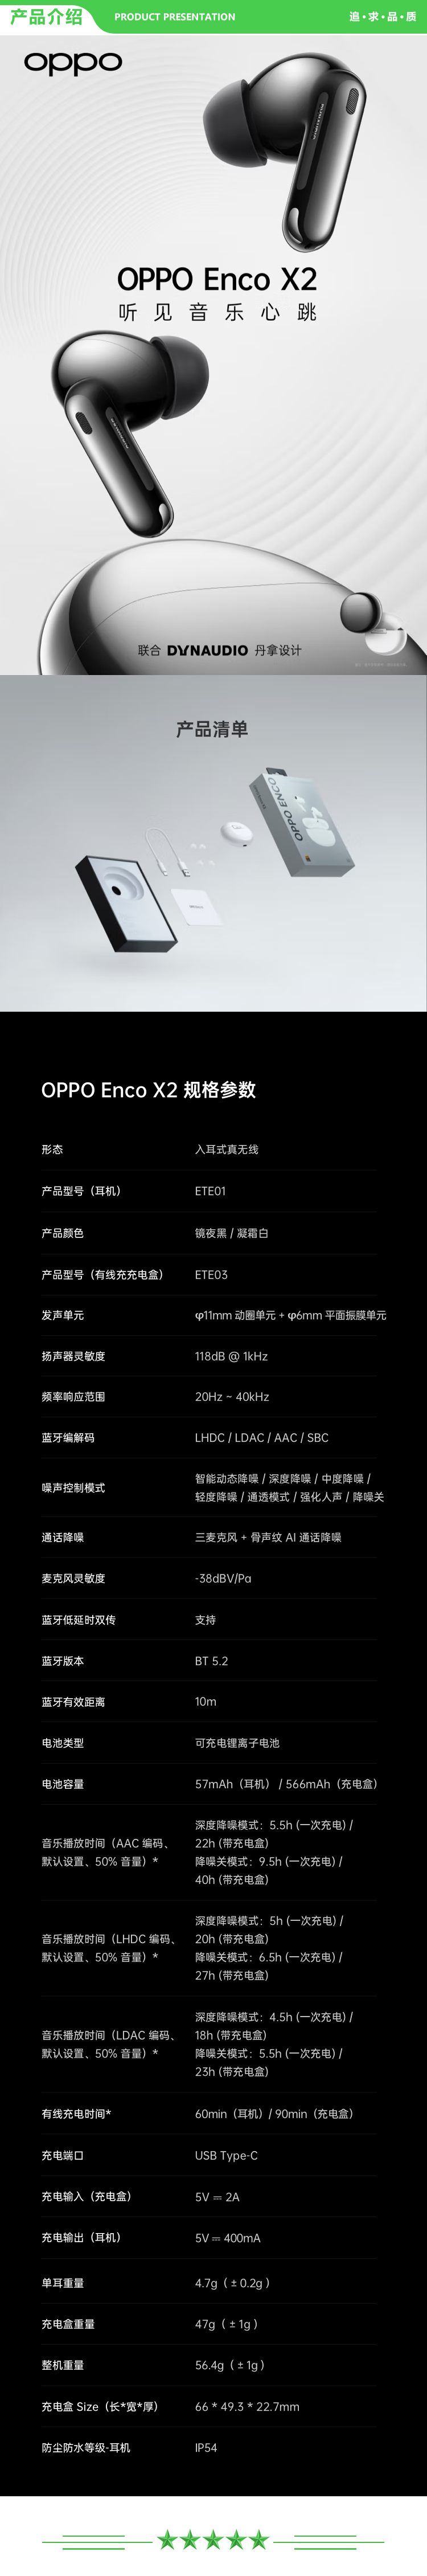 OPPO Enco X2 ETE01 凝霜白 真无线入耳式蓝牙耳机 降噪游戏音乐运动耳机 久石让调音 通用苹果华为小米手机 有线 .jpg